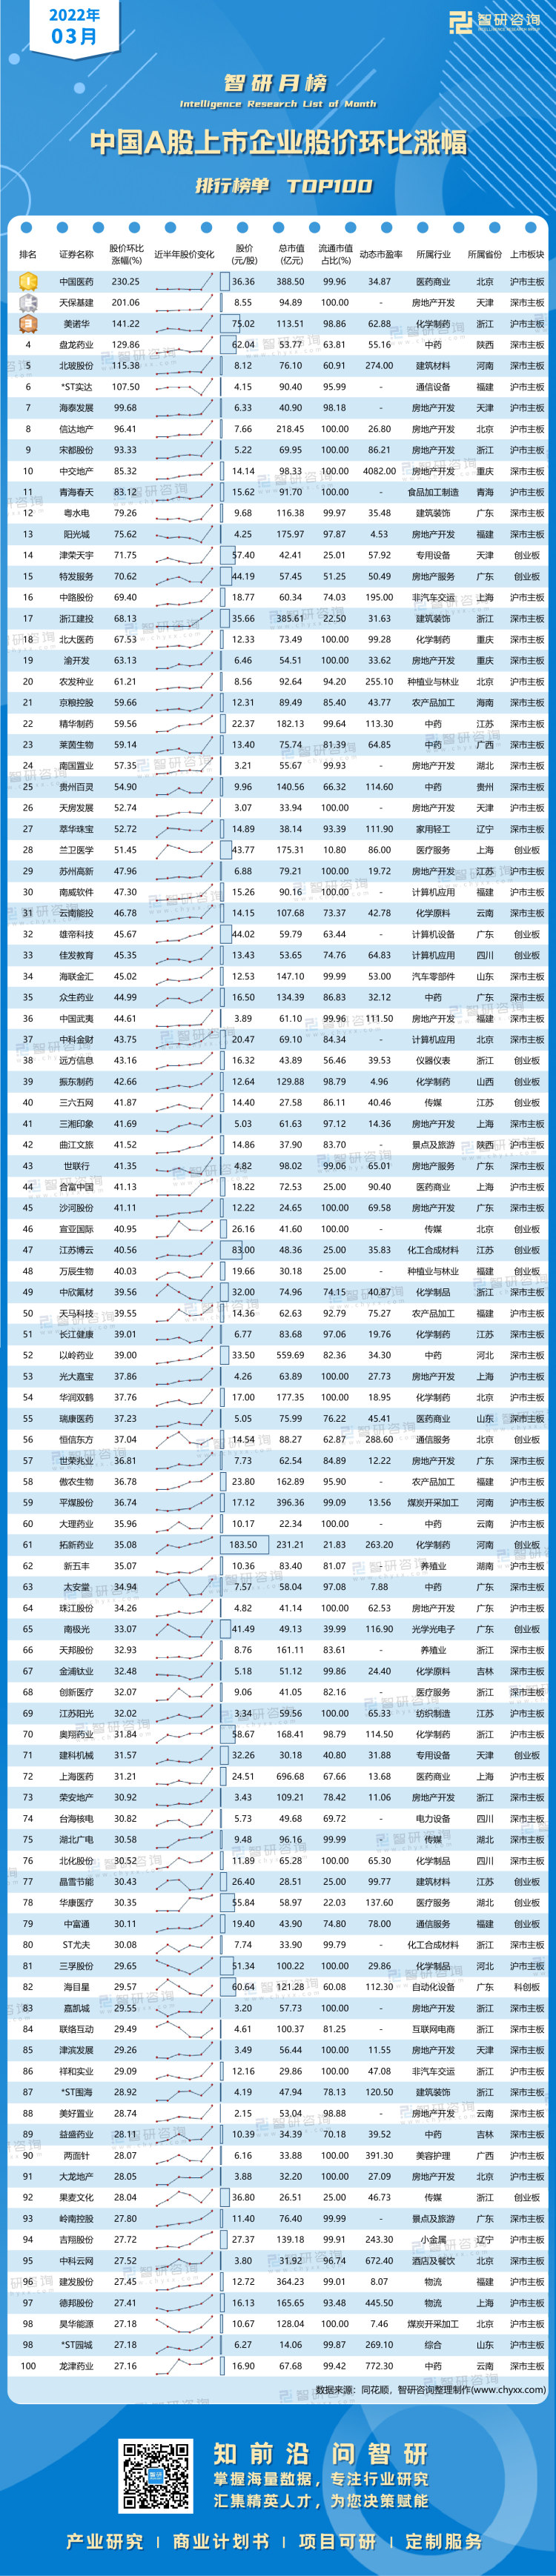 0416：3月股价环比涨幅-带水印带二维码（王钦）_画板 1